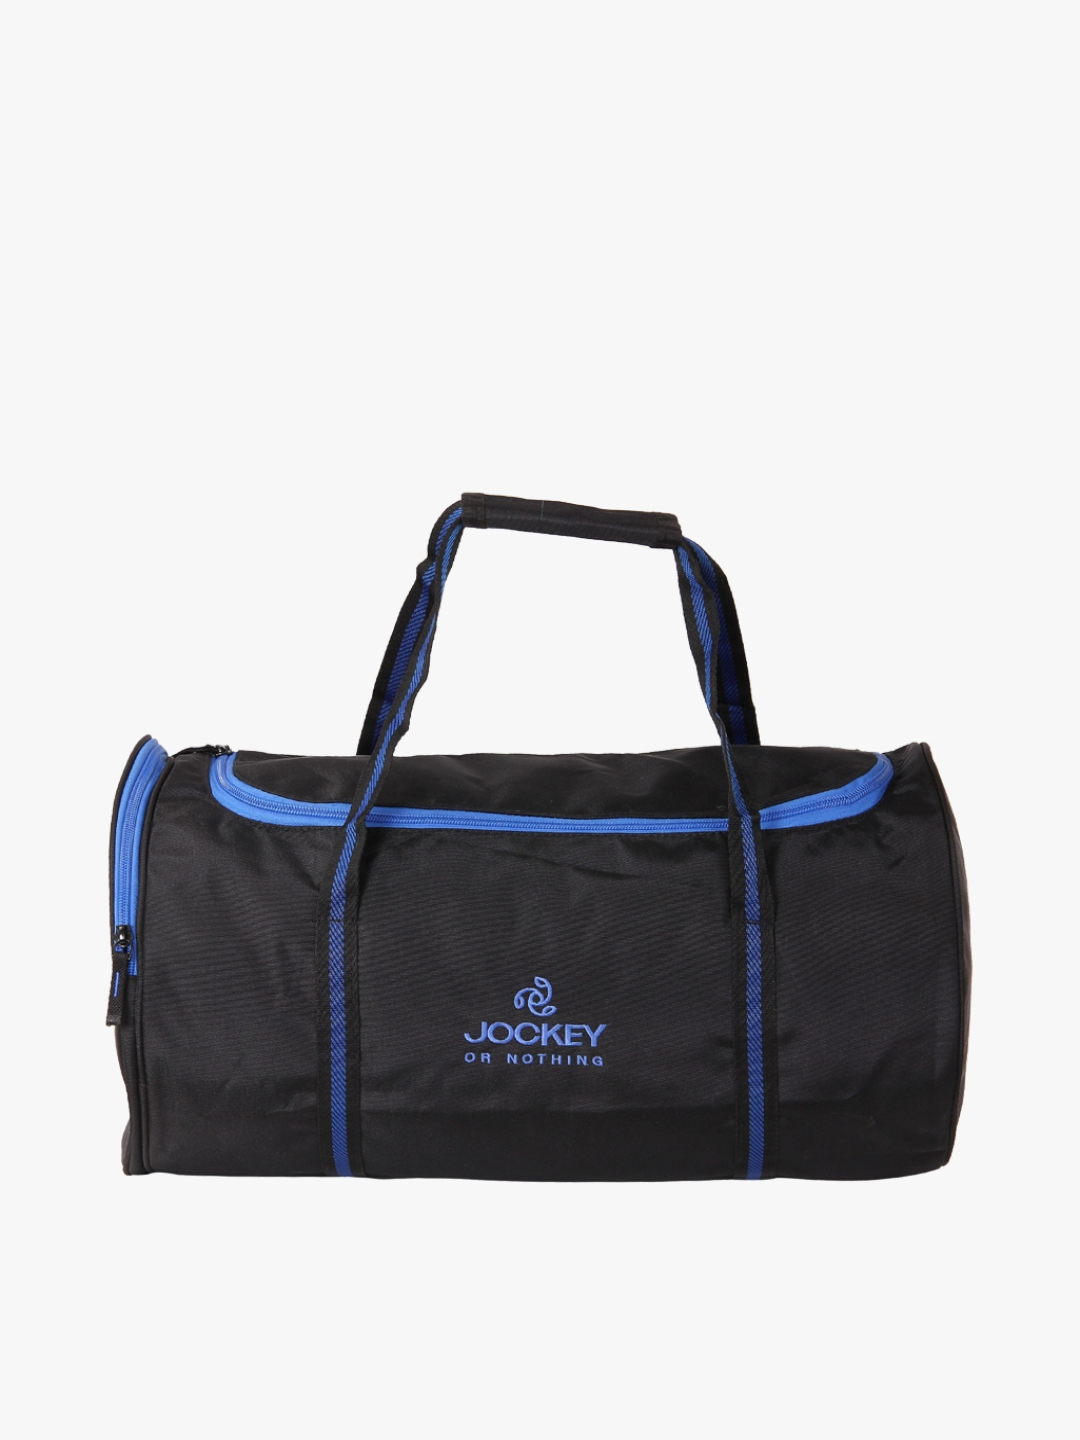 Jockey Men's Blue / Black / Gray One Shoulder Gym / Sports Bag Backpack  | eBay